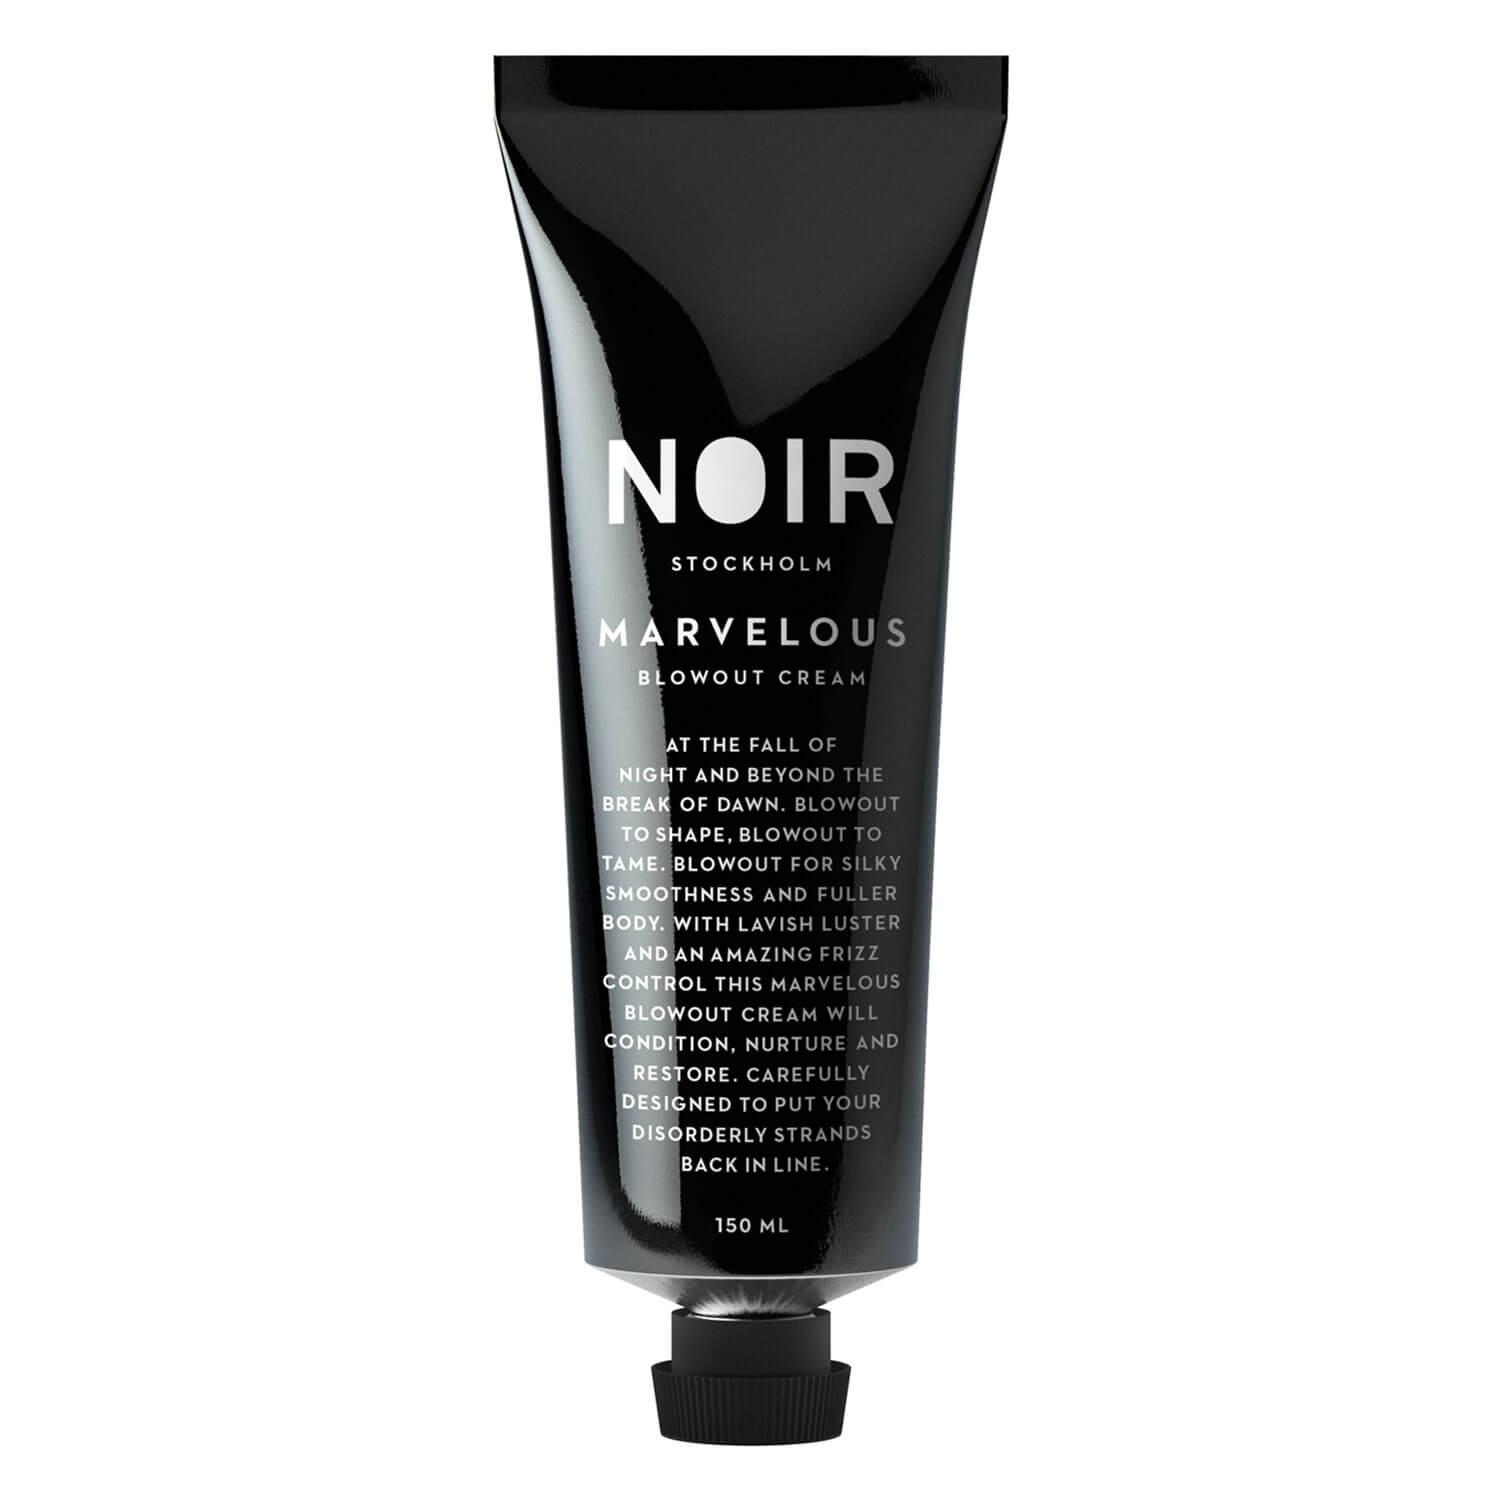 NOIR - Marvelous Blowout Cream